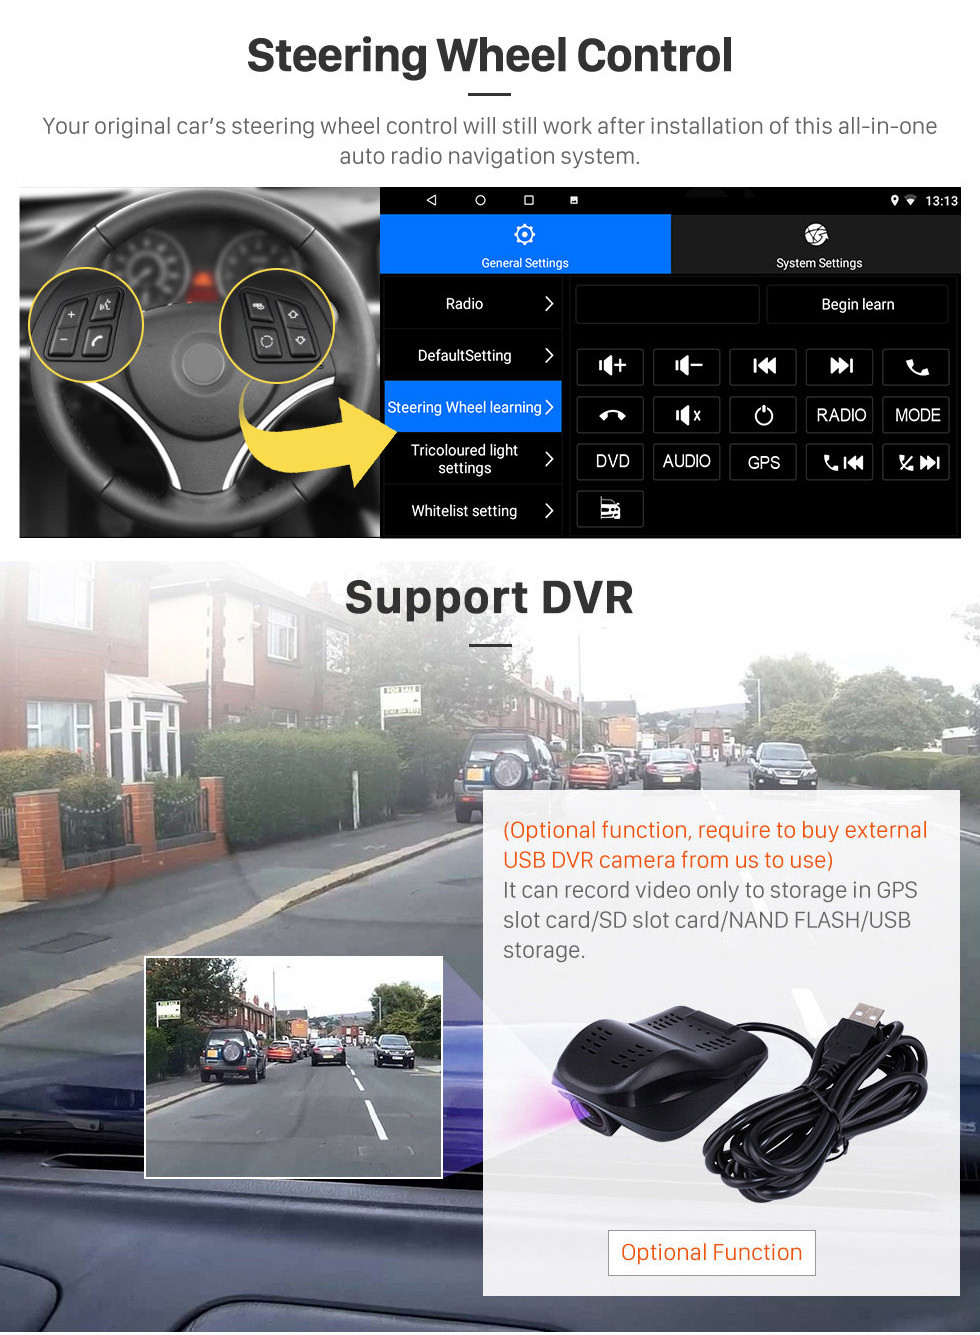 Seicane OEM 9 pouces Android 13.0 Radio pour 2001-2008 Peugeot 307 Bluetooth WIFI HD à écran tactile soutien à la navigation GPS Carplay DVR OBD caméra de recul